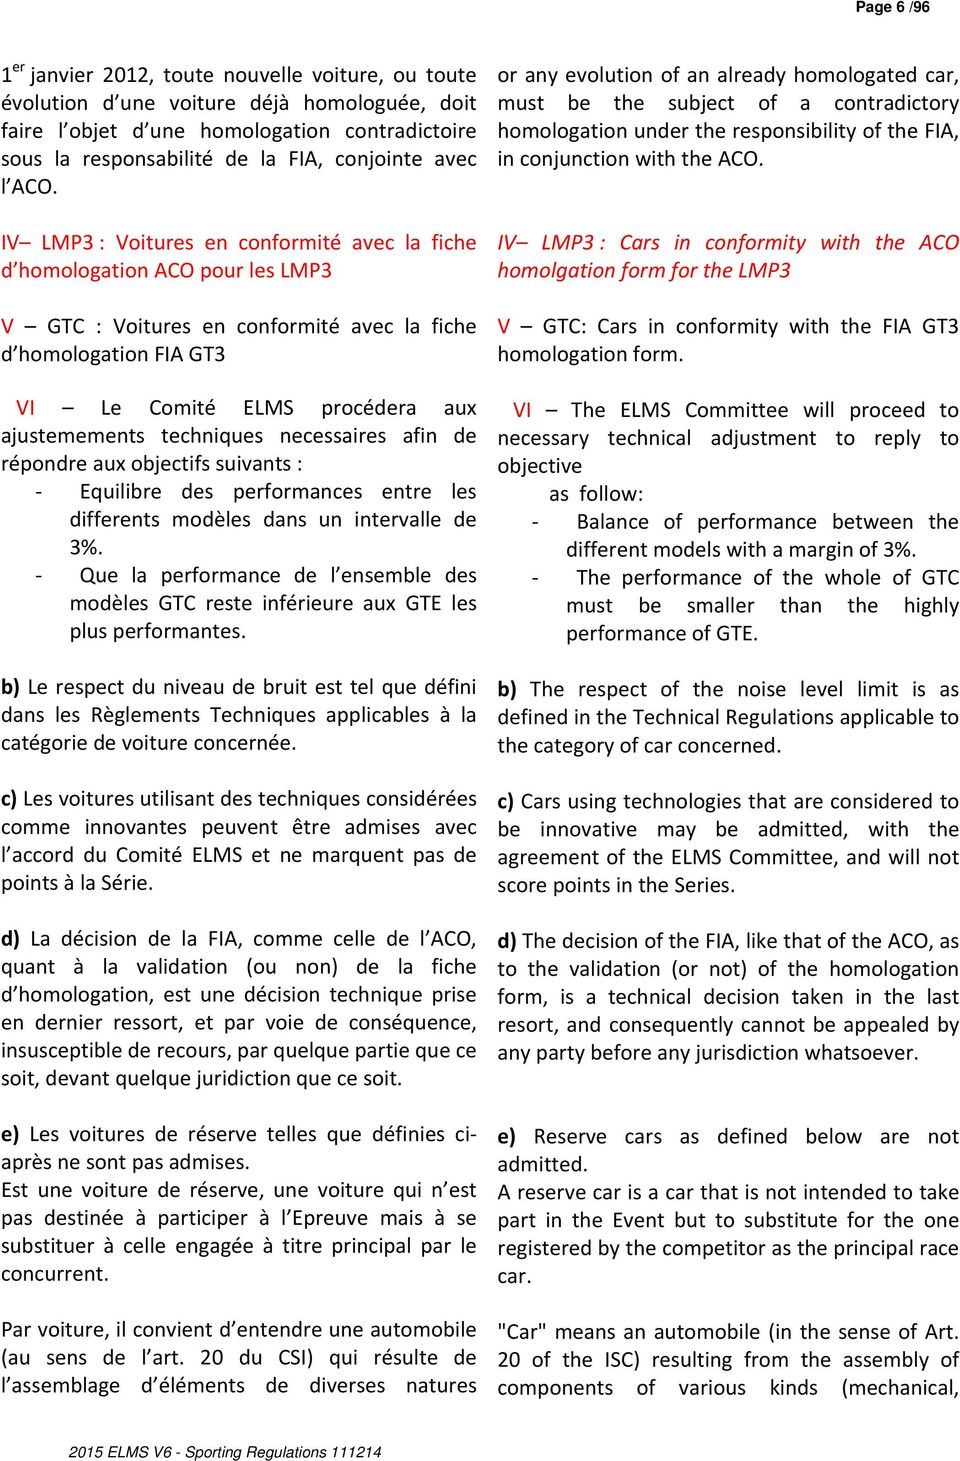 IV LMP3 : Voitures en conformité avec la fiche d homologation ACO pour les LMP3 V GTC : Voitures en conformité avec la fiche d homologation FIA GT3 VI Le Comité ELMS procédera aux ajustemements